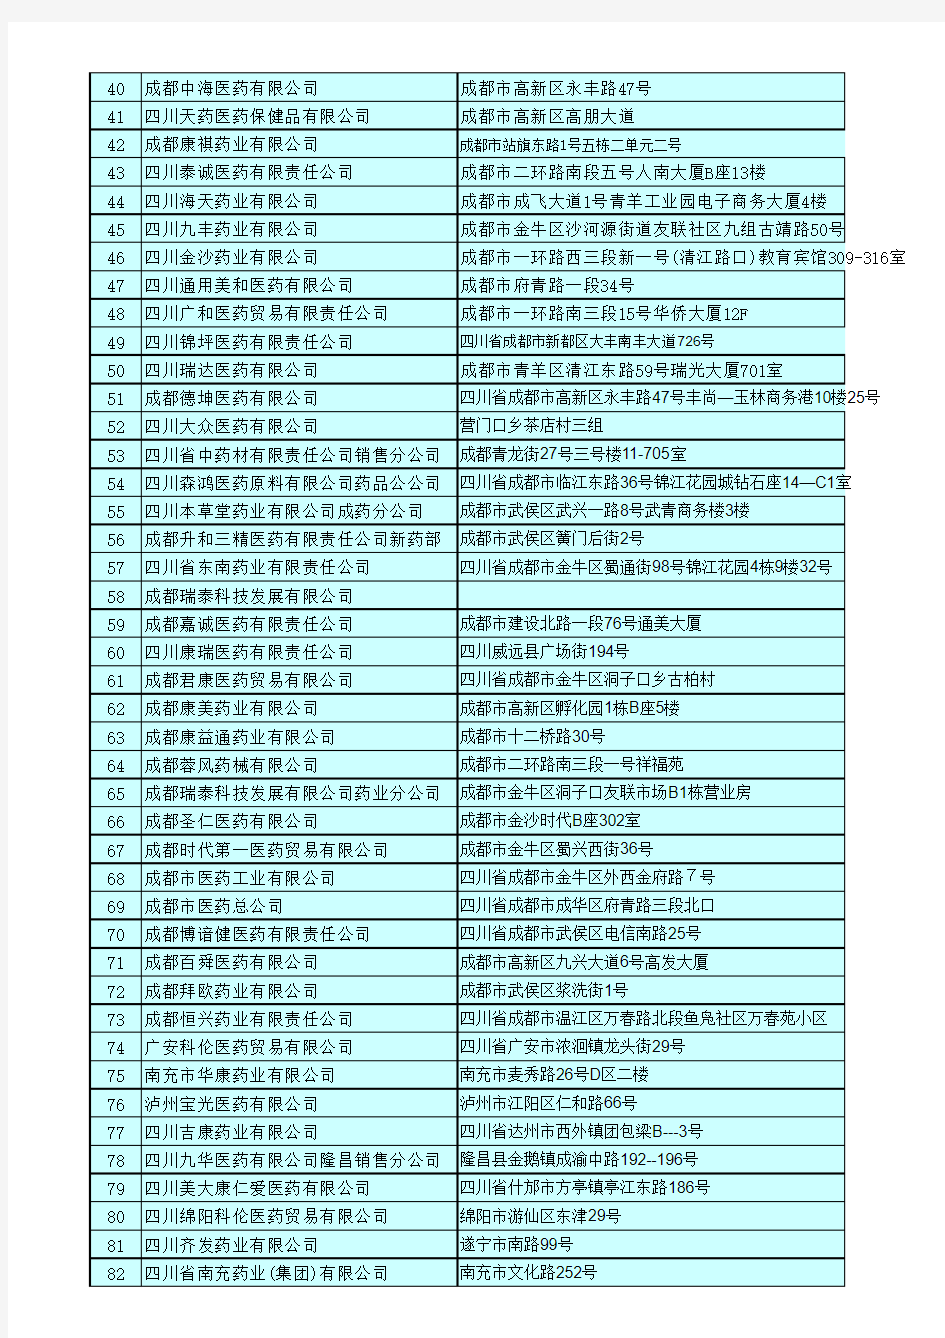 2010年度四川省基本药物集中采购配送企业名单